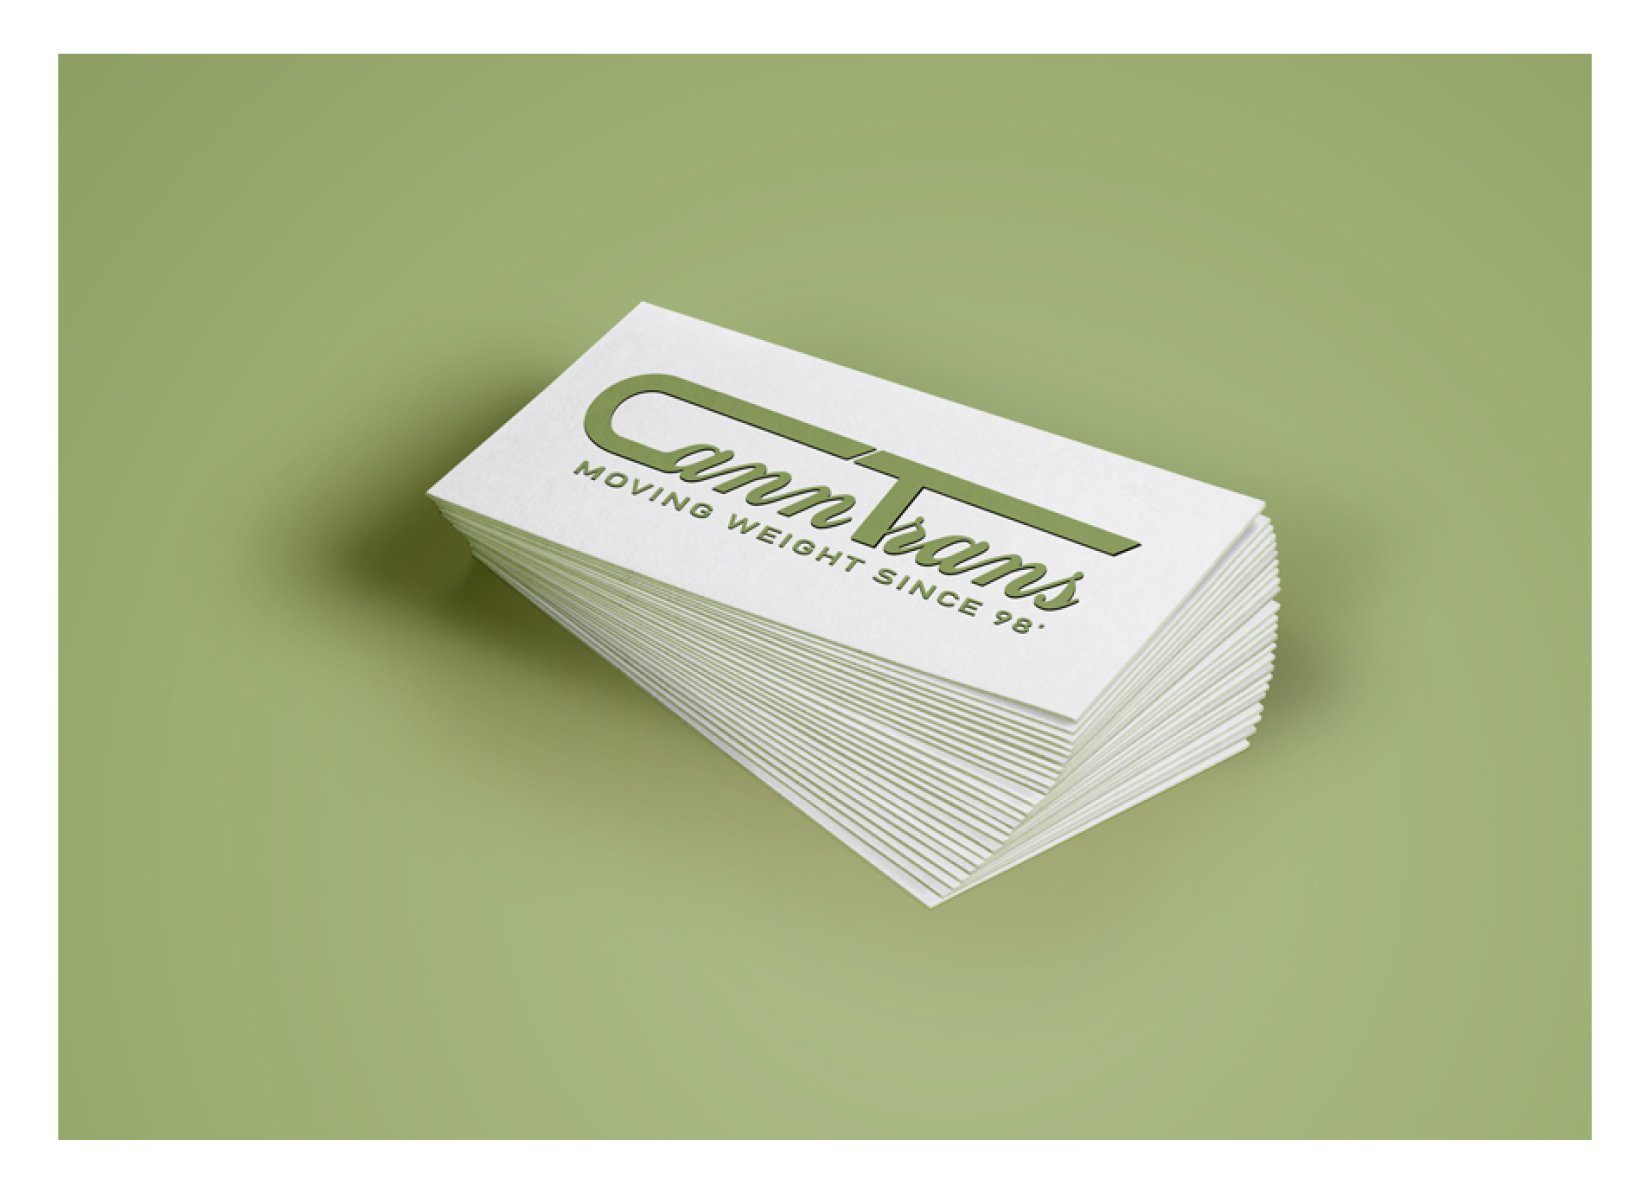 CannTrans Logo on Card